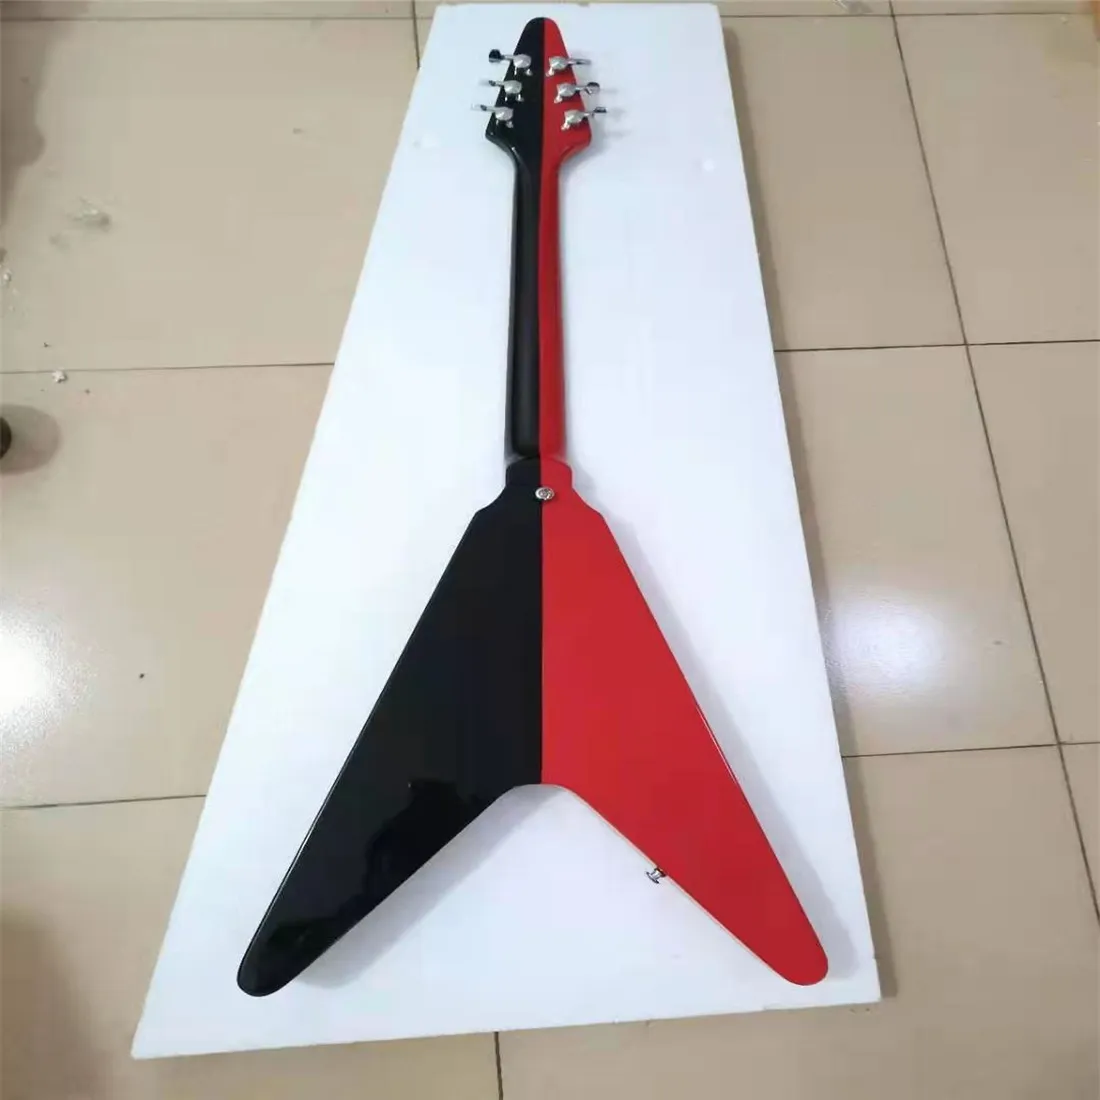 Chitarra elettrica a 6 corde, tastiera protettiva in palissandro bicolore rosso e nero